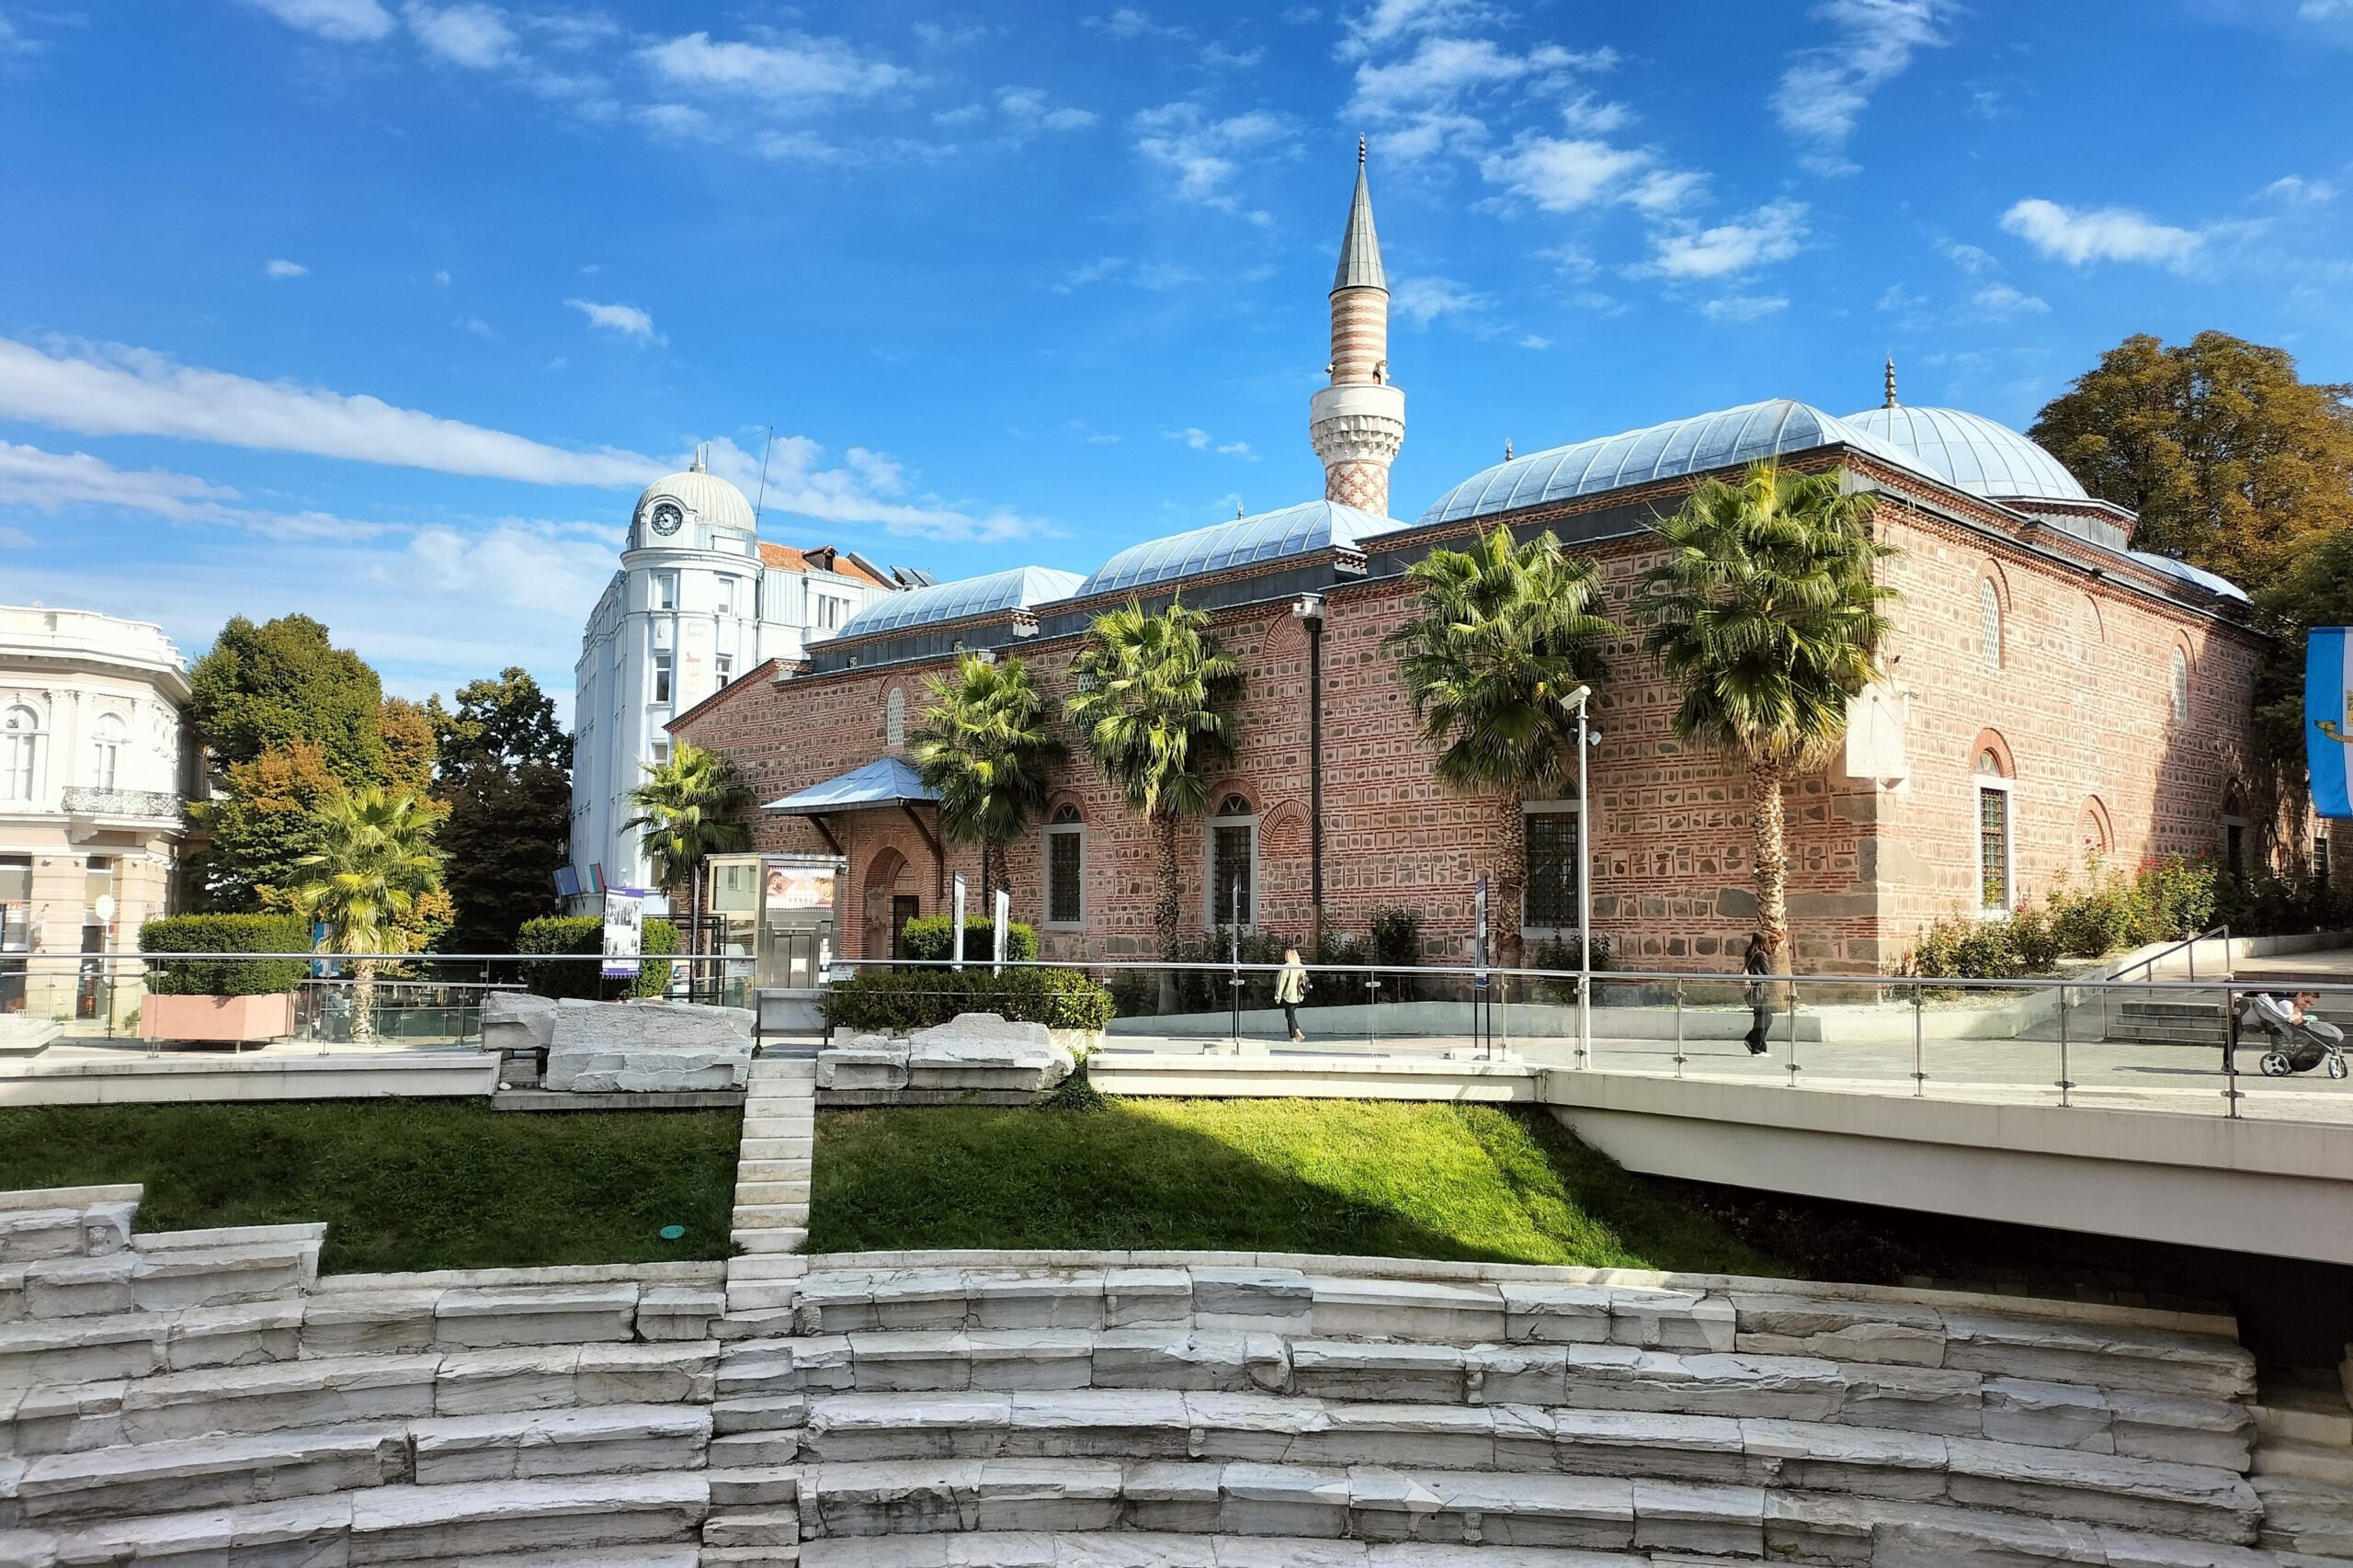 Dzhumaya mosque, things to do in plovdiv